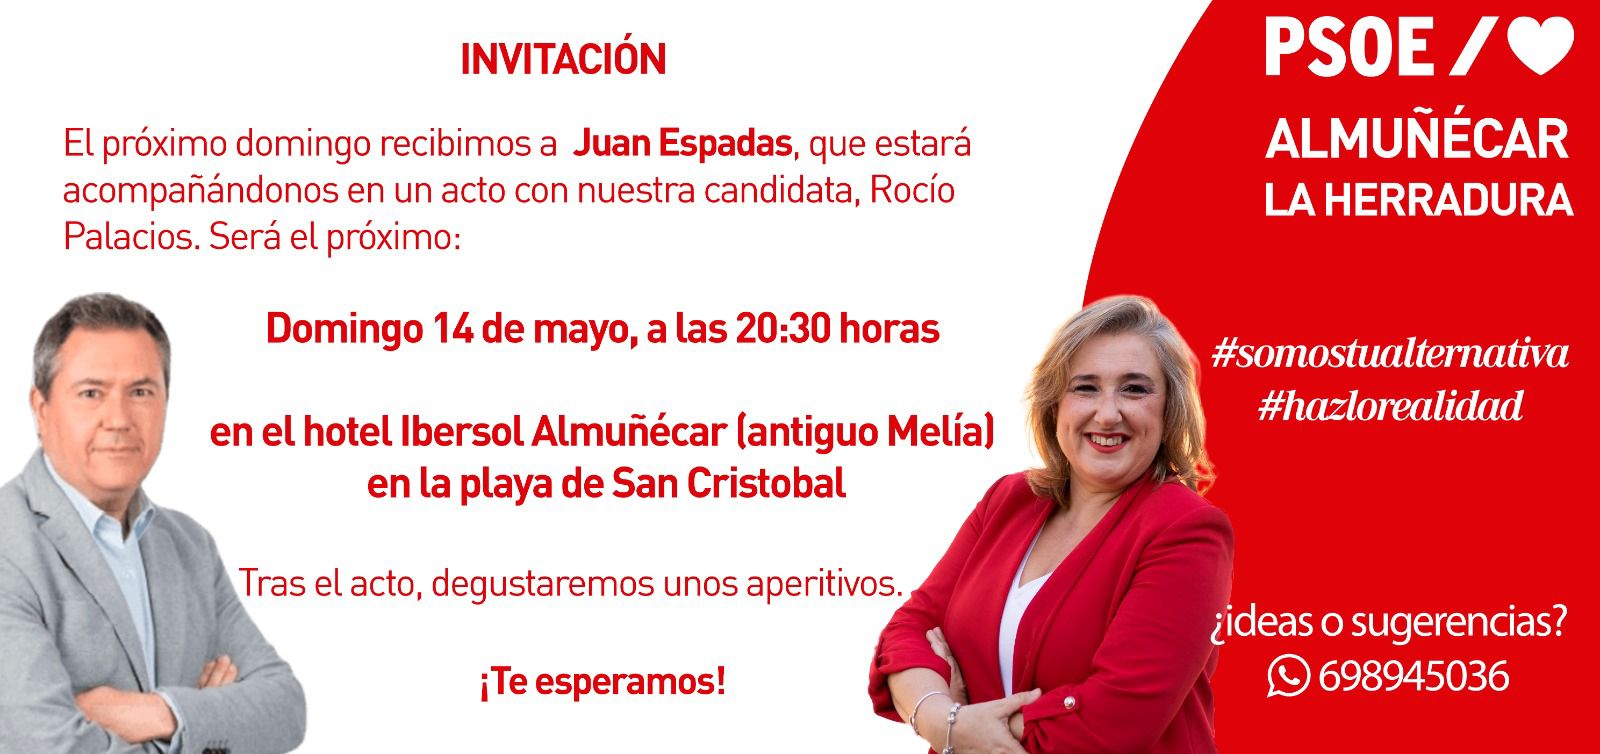 Juan Espadas respalda este domingo a la candidata socialista Rocío Palacios en Almuñécar